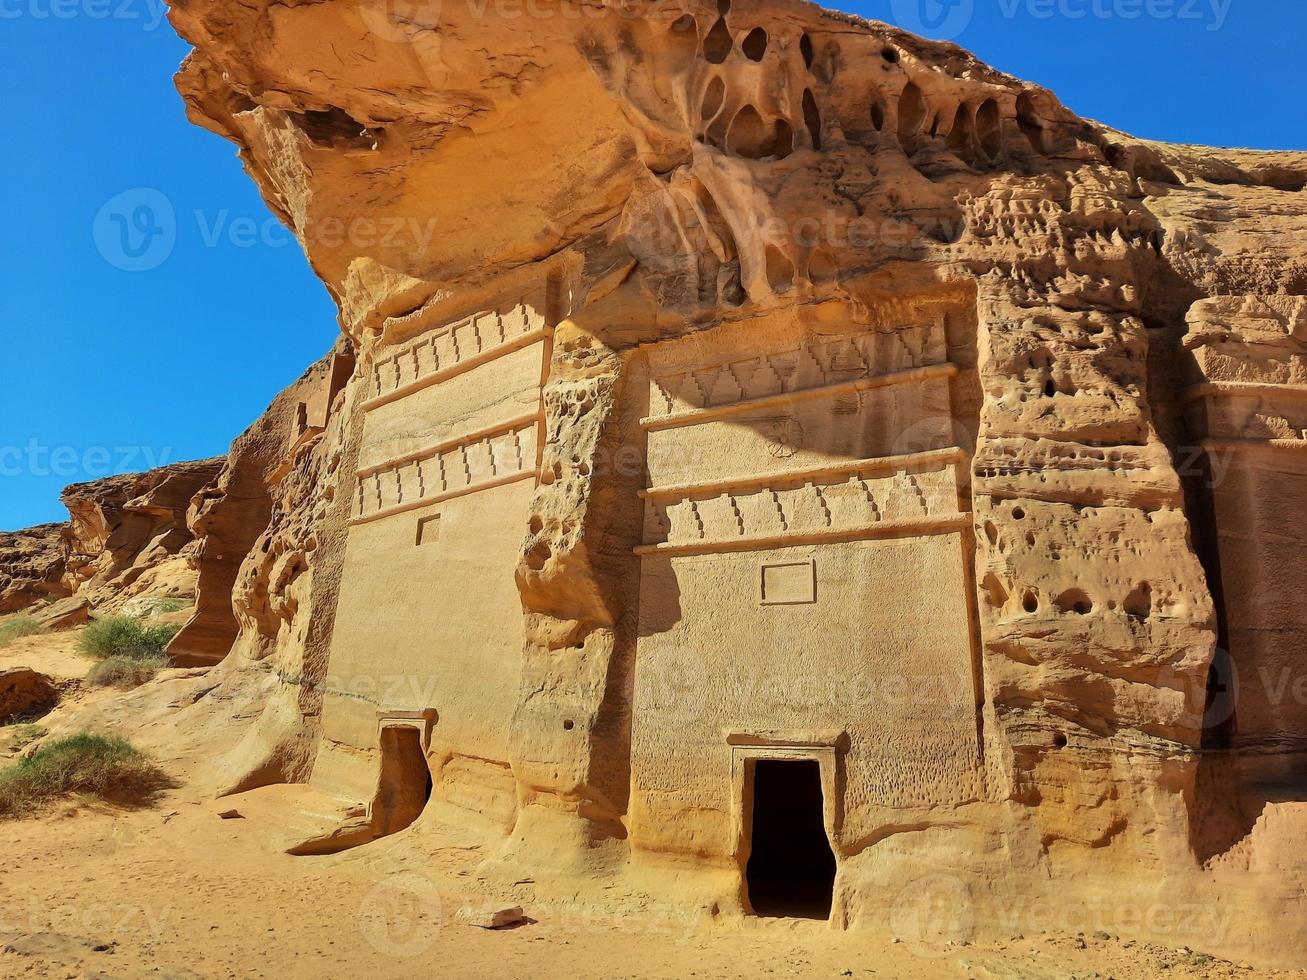 lindo dia Visão do al hegra, senhora Saleh arqueológico local dentro al ula, saudita arábia. foto